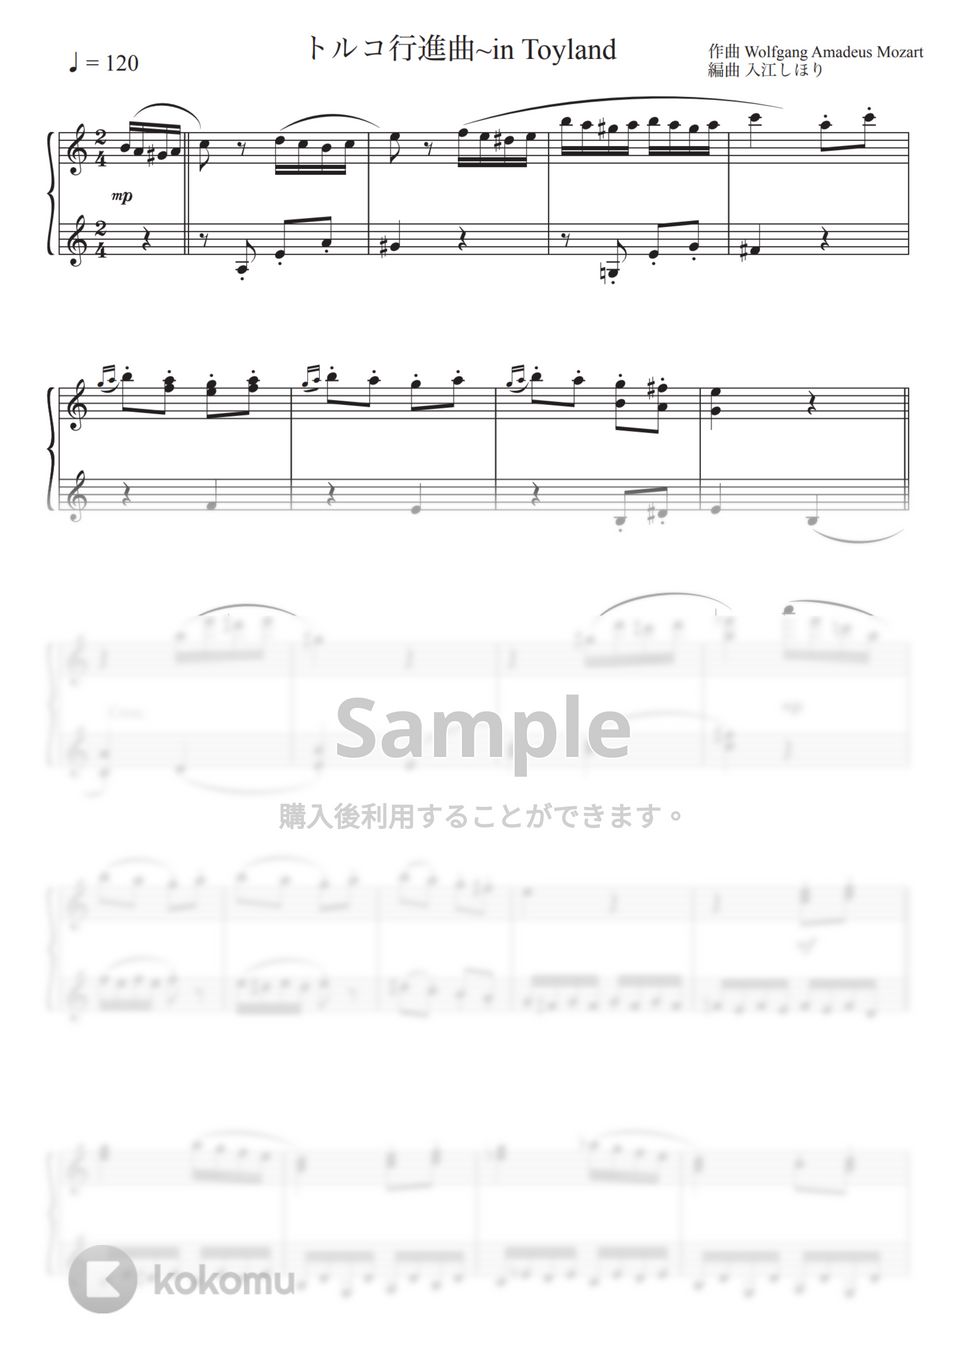 モーツァルト - トルコ行進曲 (アレンジ) by 入江しほり